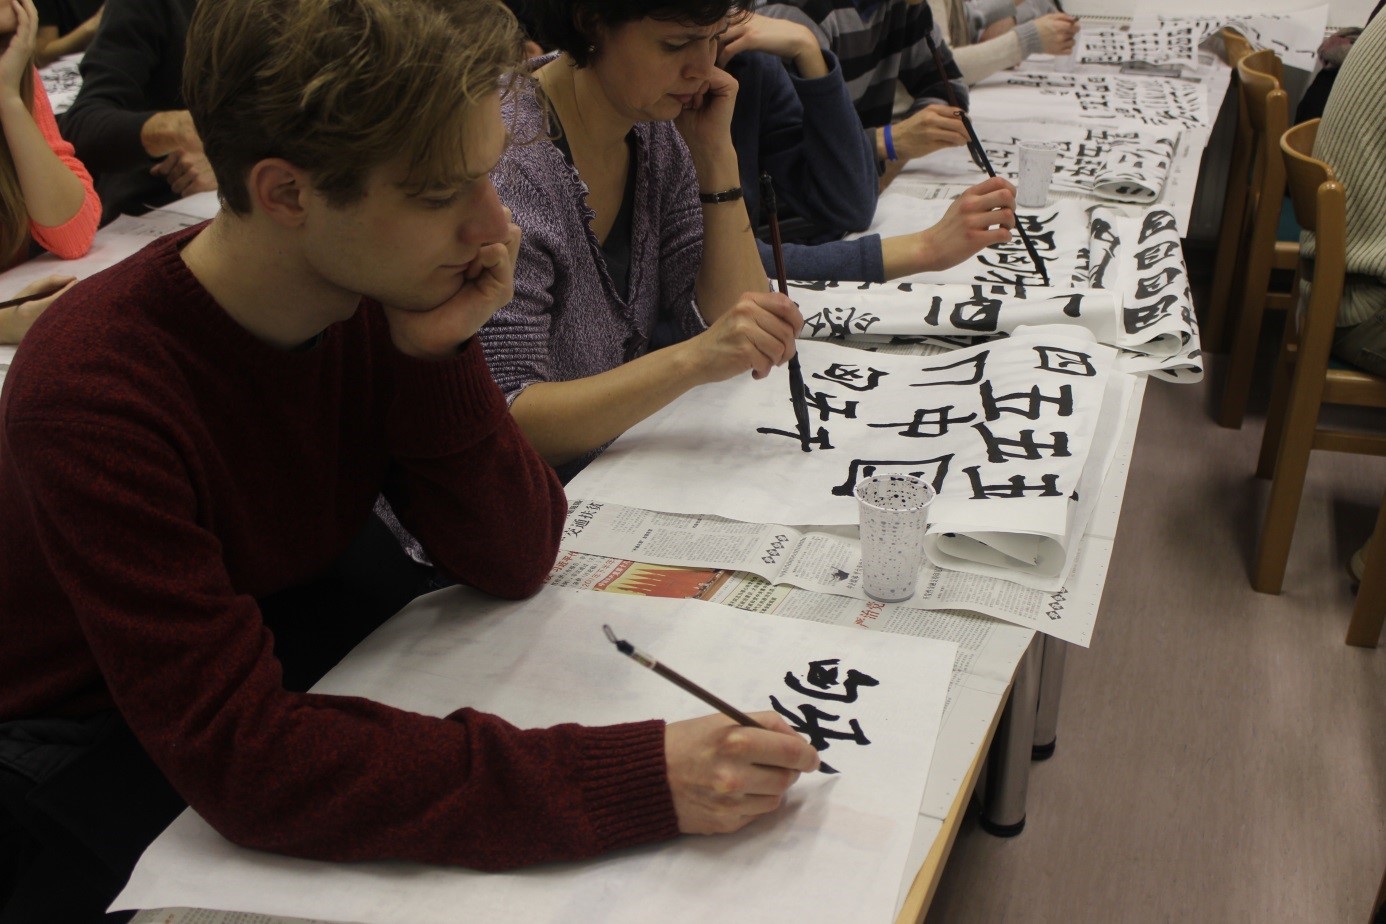 Ingyenes kalligráfia foglalkozás az ELTE Konfuciusz Intézetben